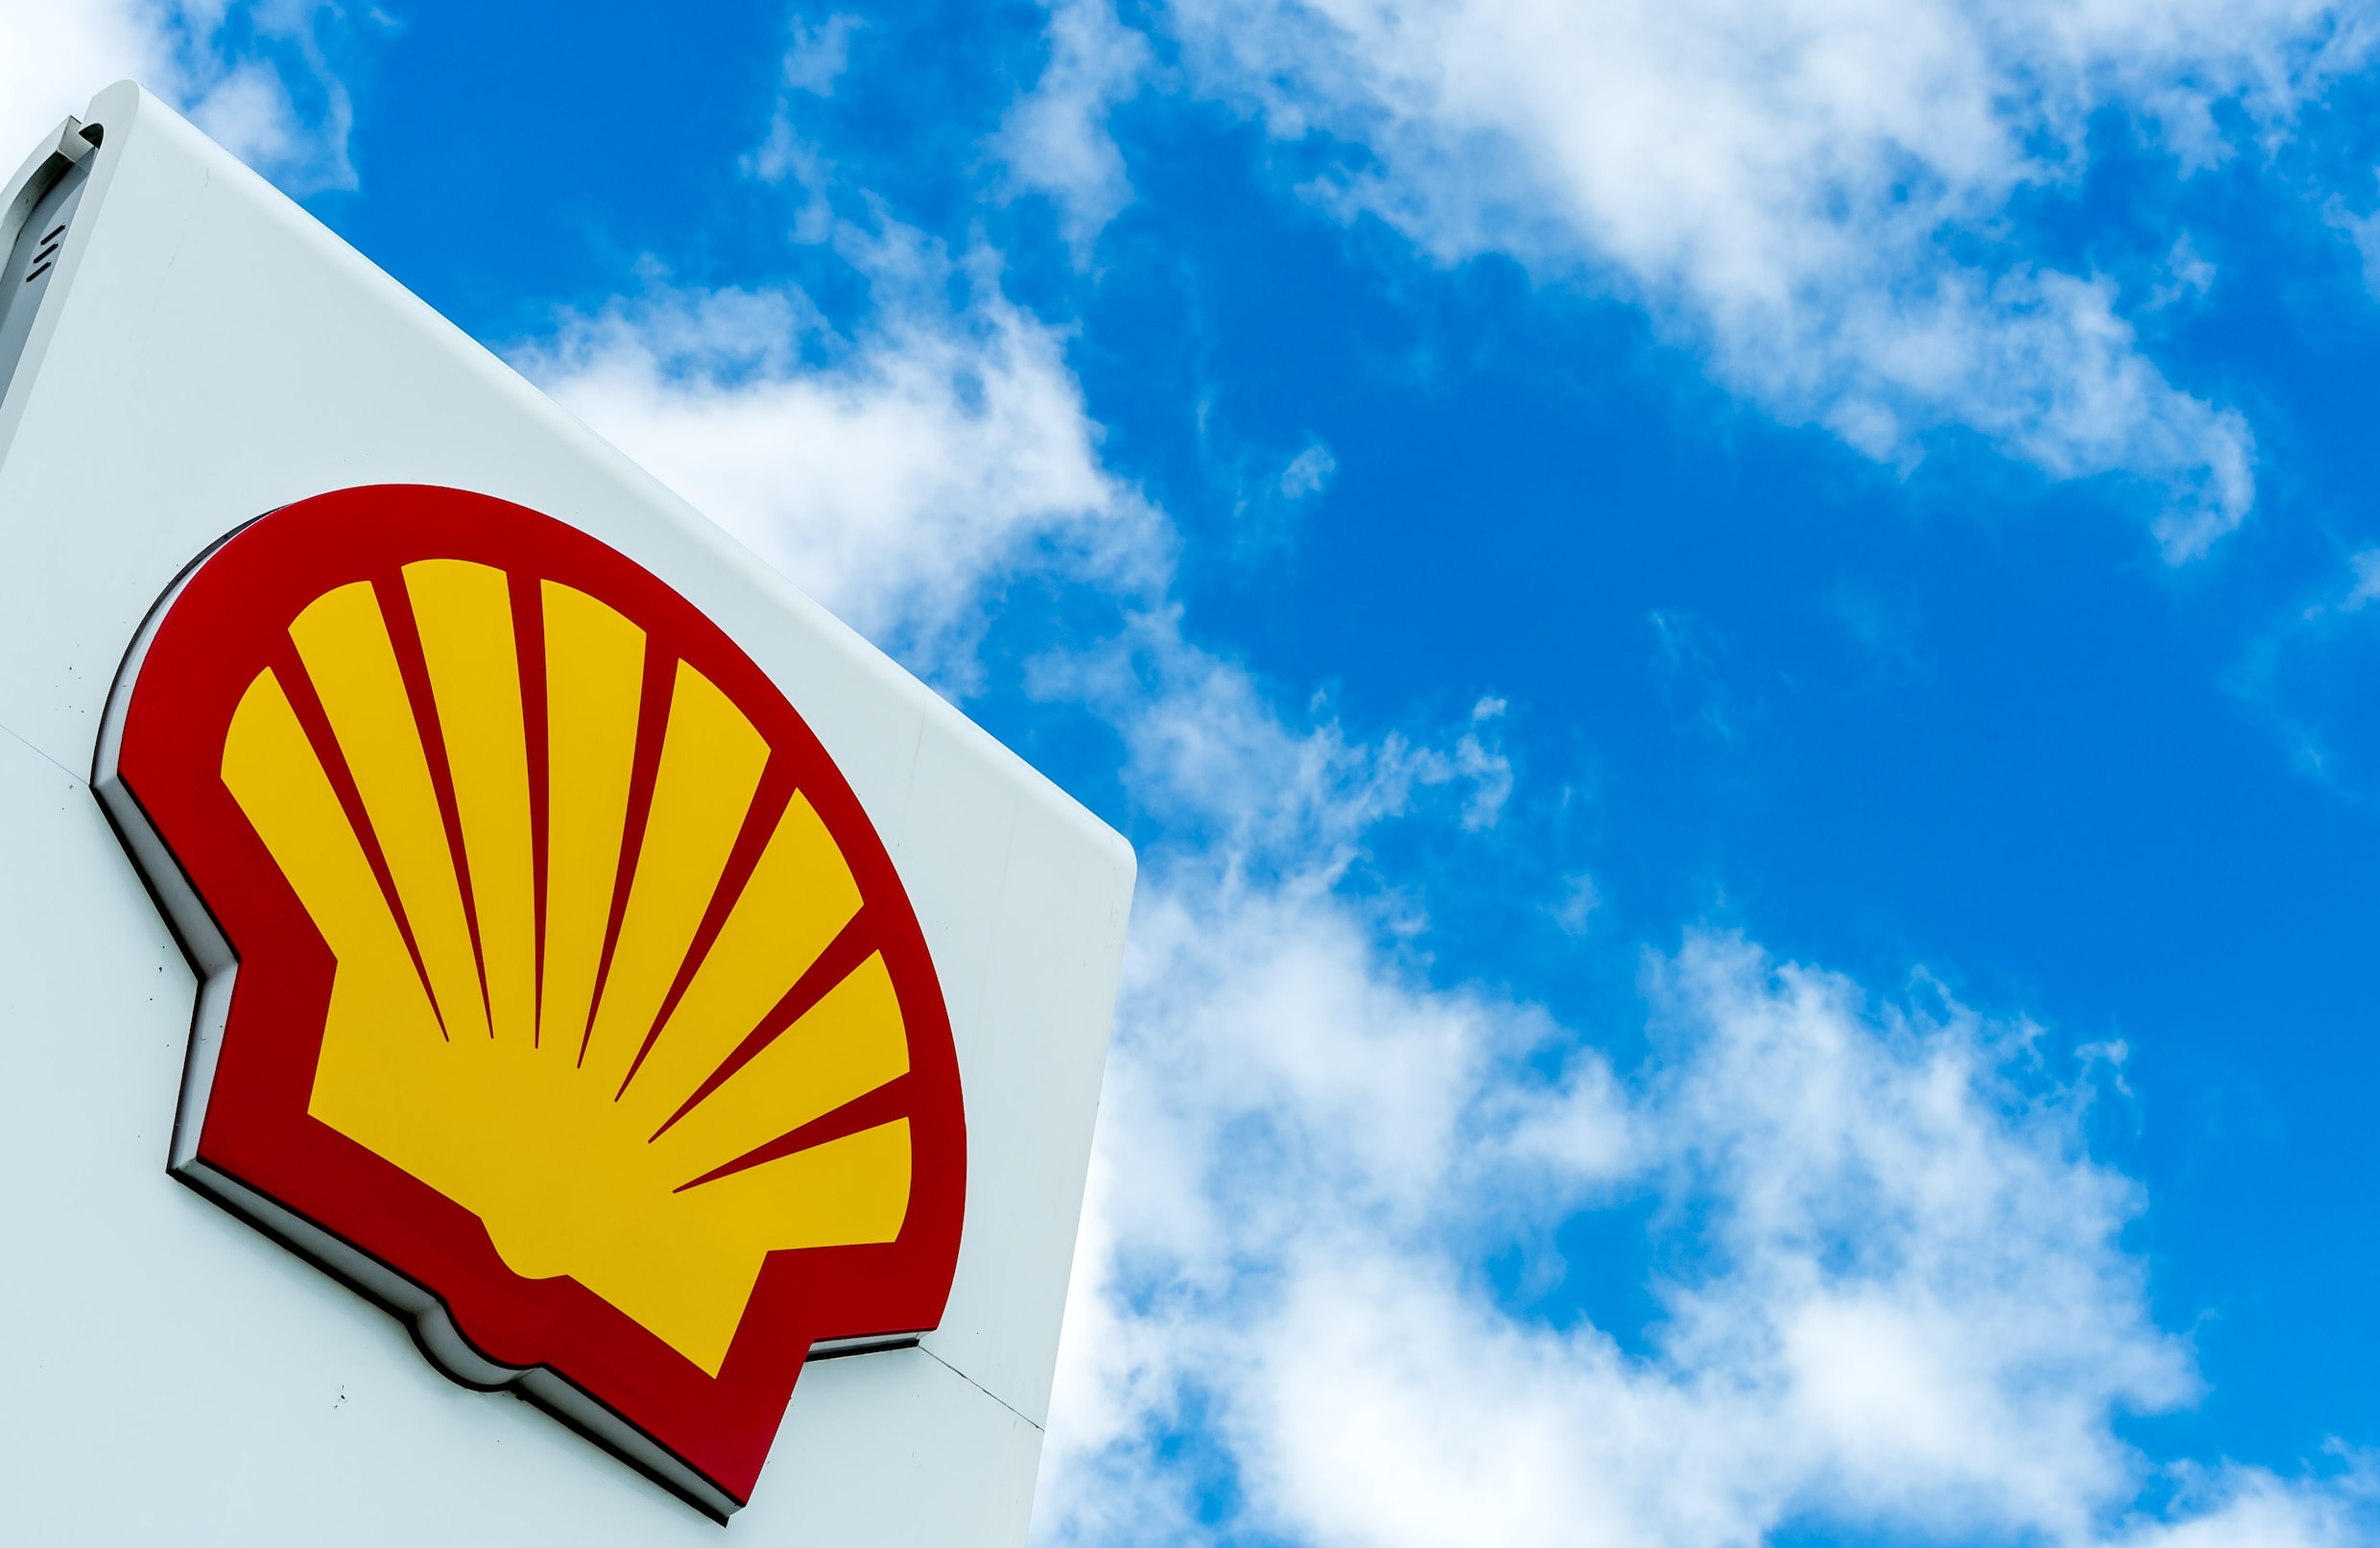 “Shell wil budget voor groene energie verdubbelen”